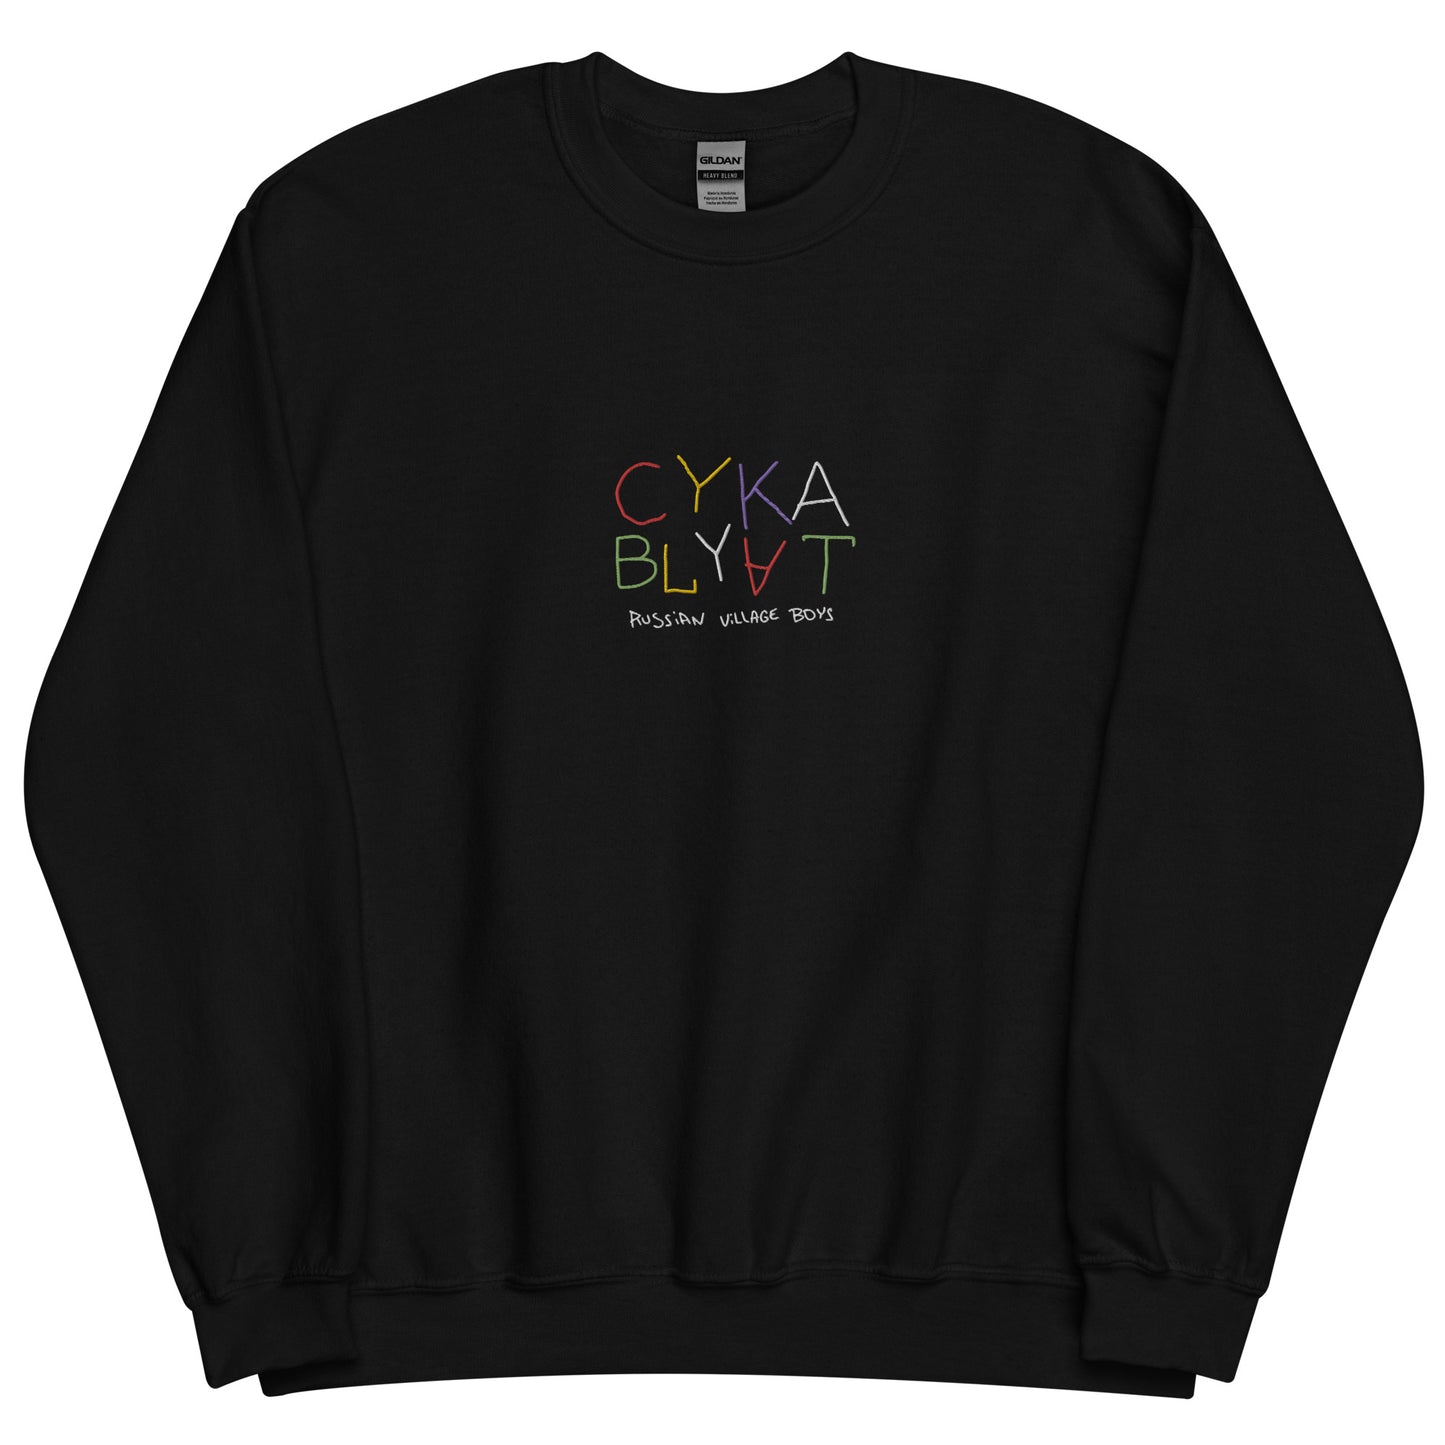 CYKA BLYAT | Unisex Sweatshirt with embroidery